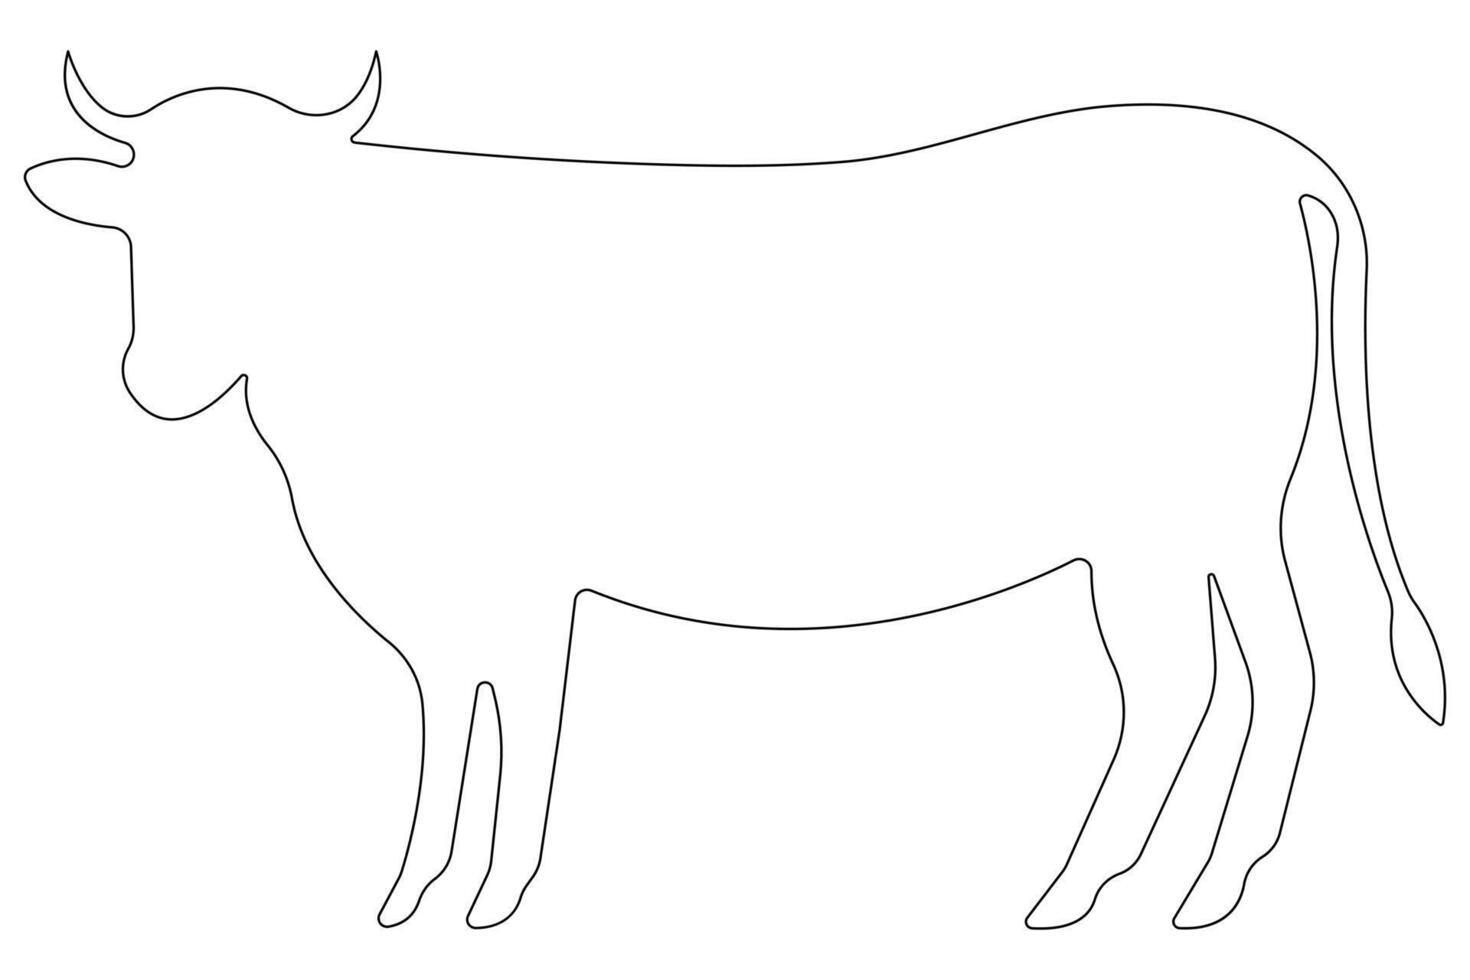 kontinuierlich einer Linie Kunst Zeichnung von Kuh Haustier Tier Konzept Gliederung Vektor Illustration